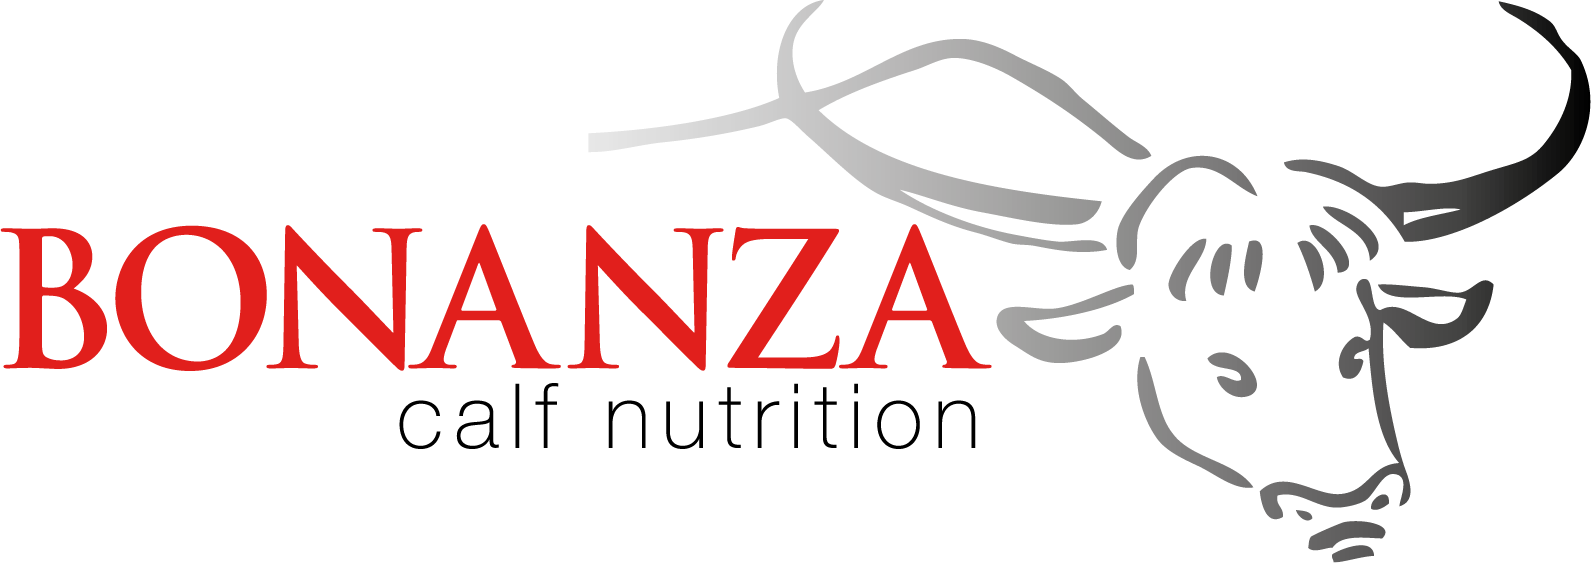 bonanza logo